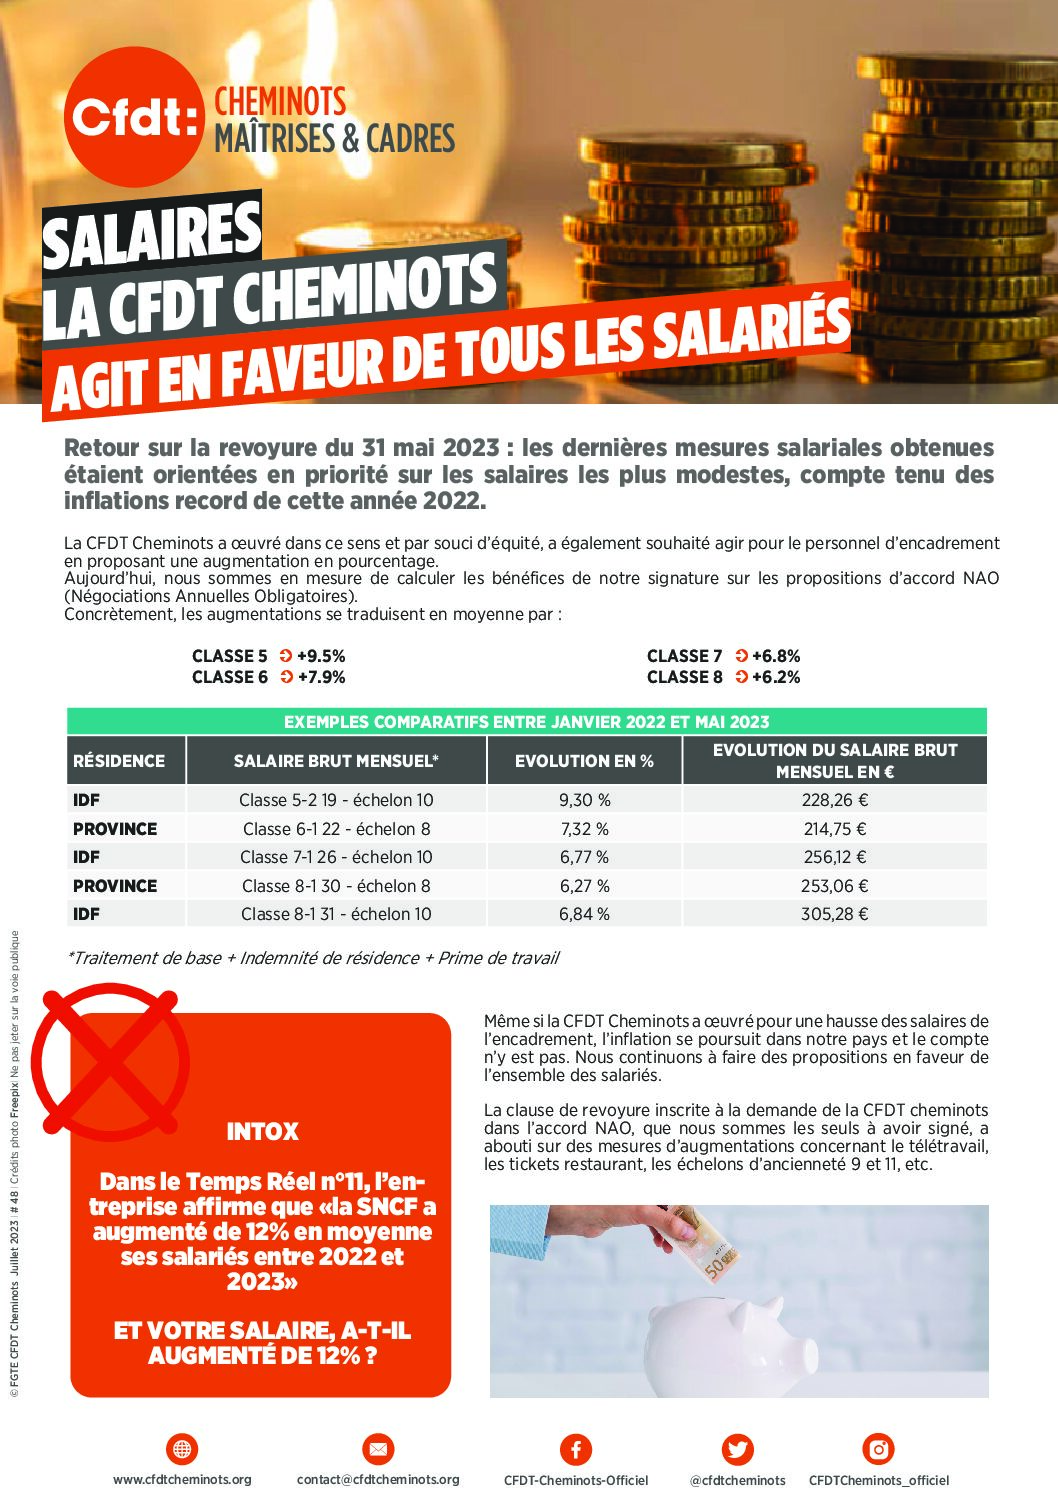 Salaires la CFDT Cheminots agit en faveur de tous les salariés